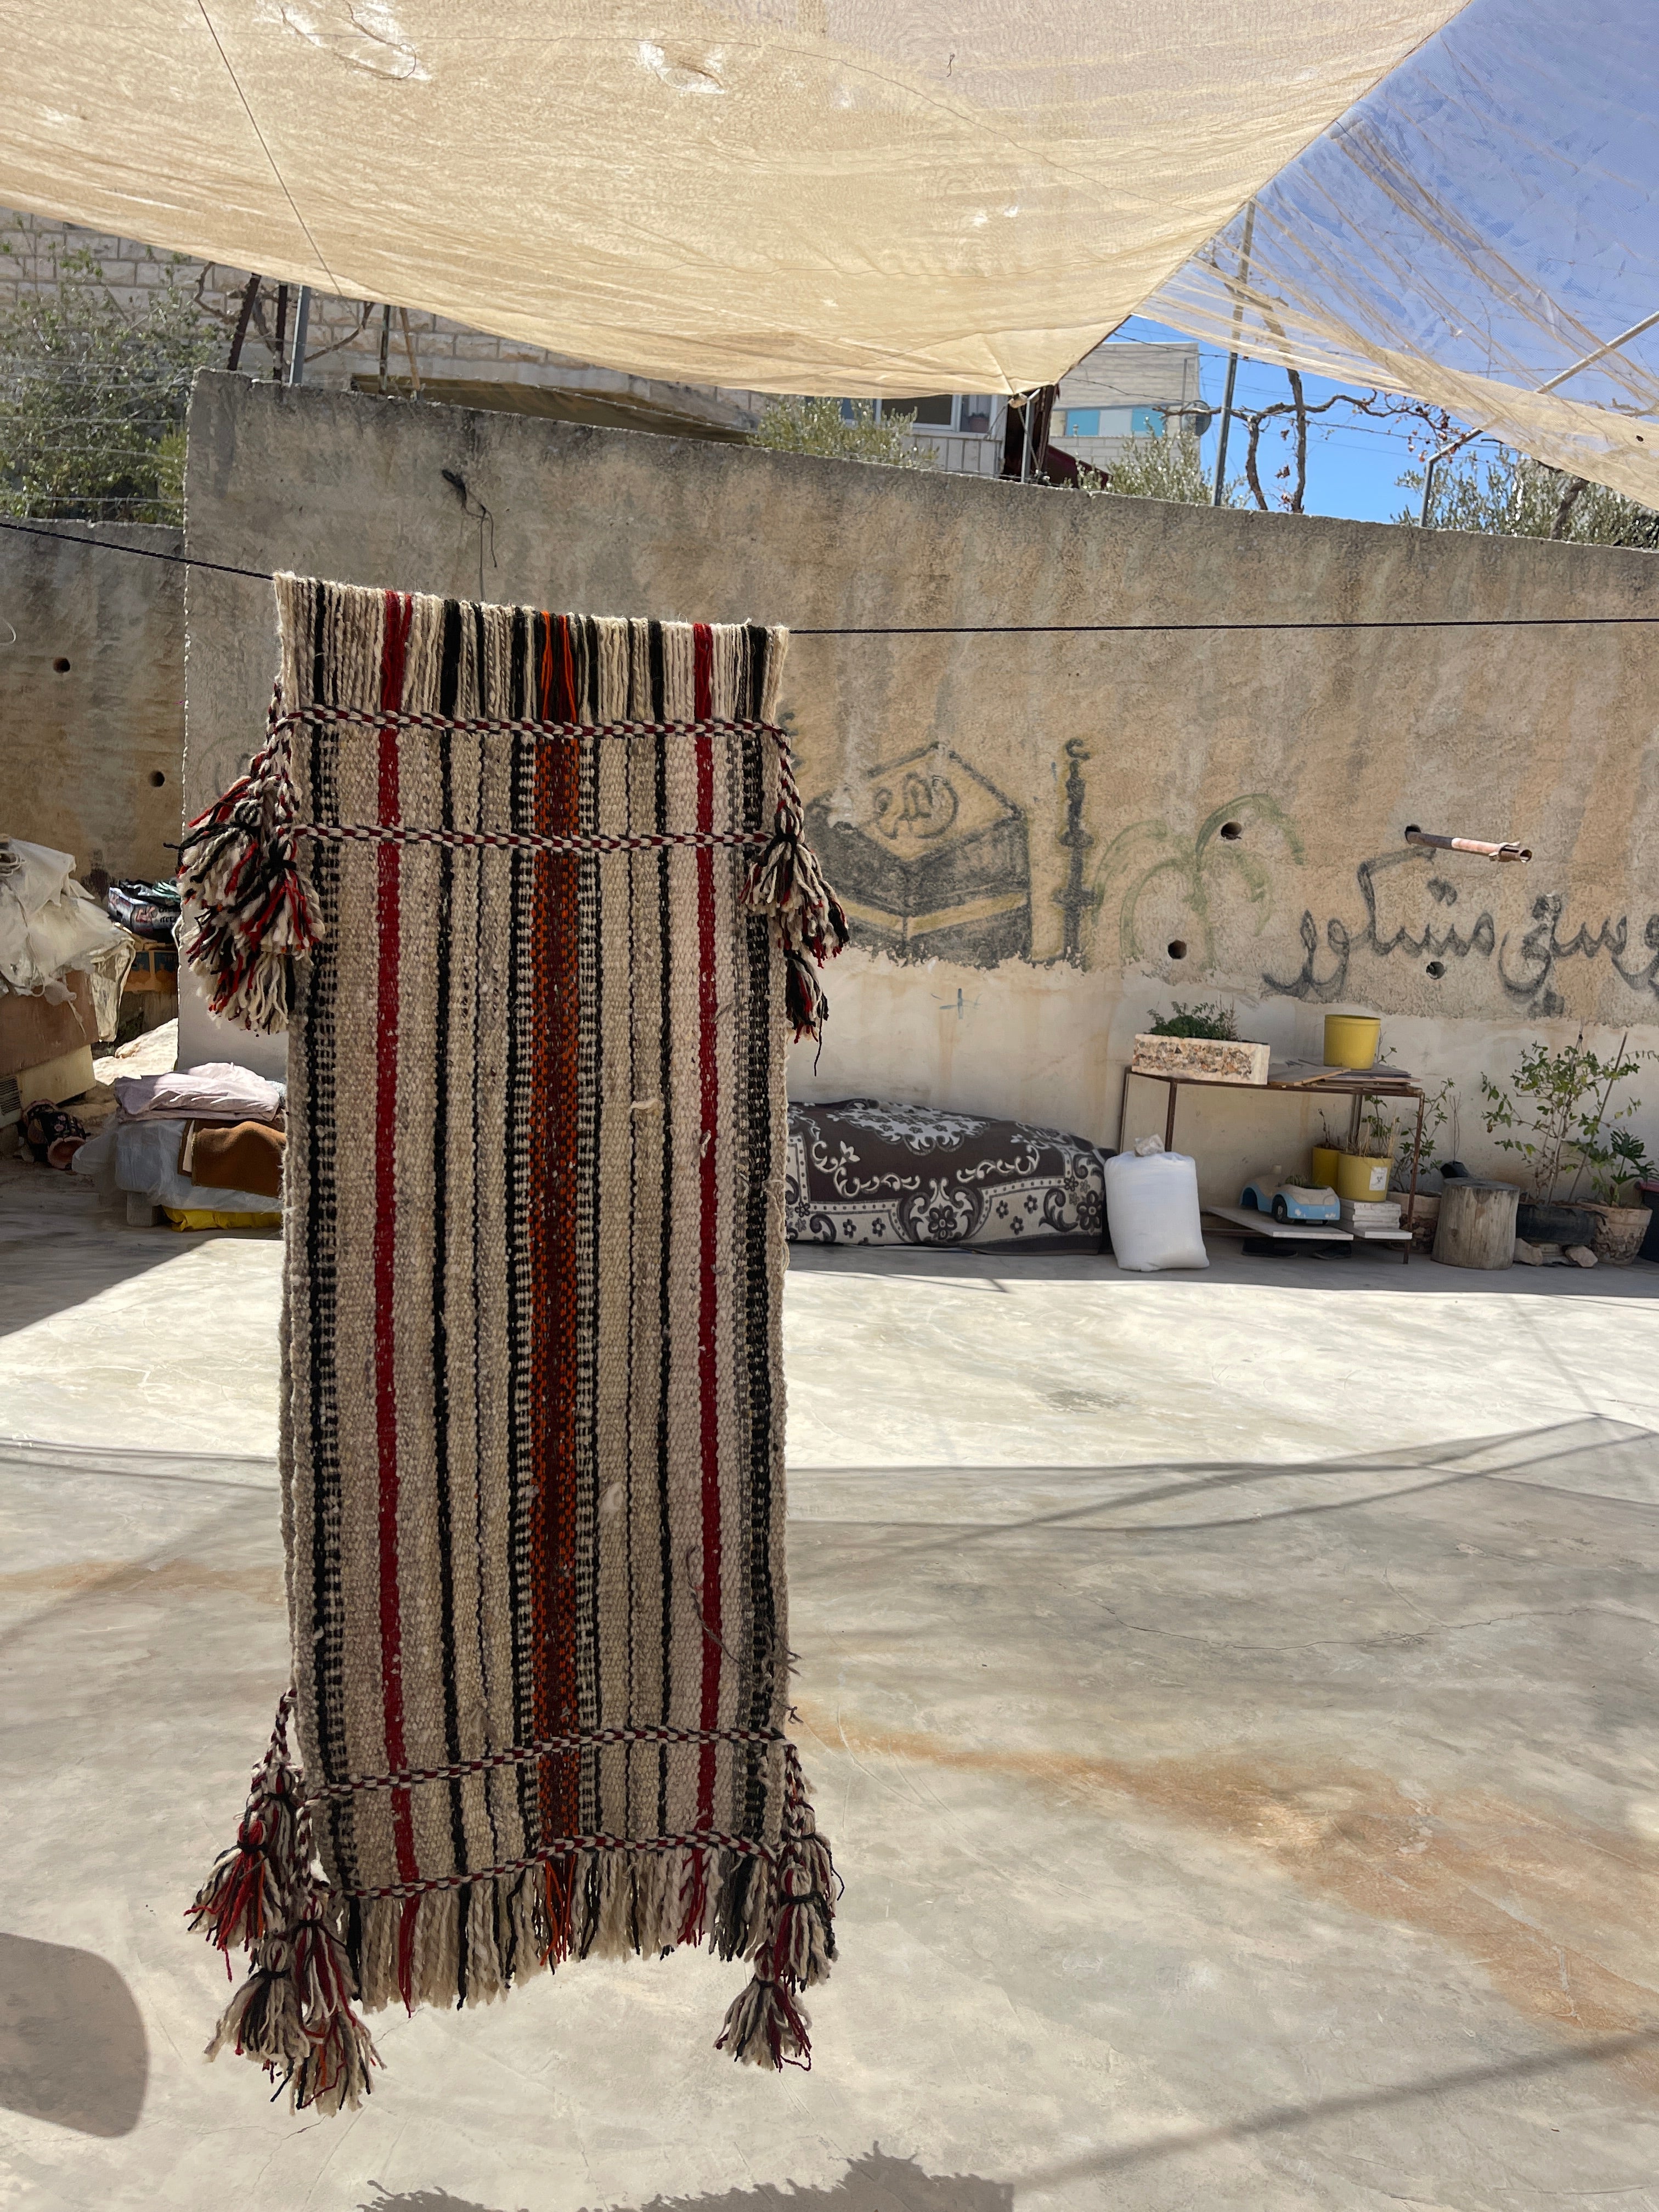 Hand spun wool, Hebron, Palestinian territories